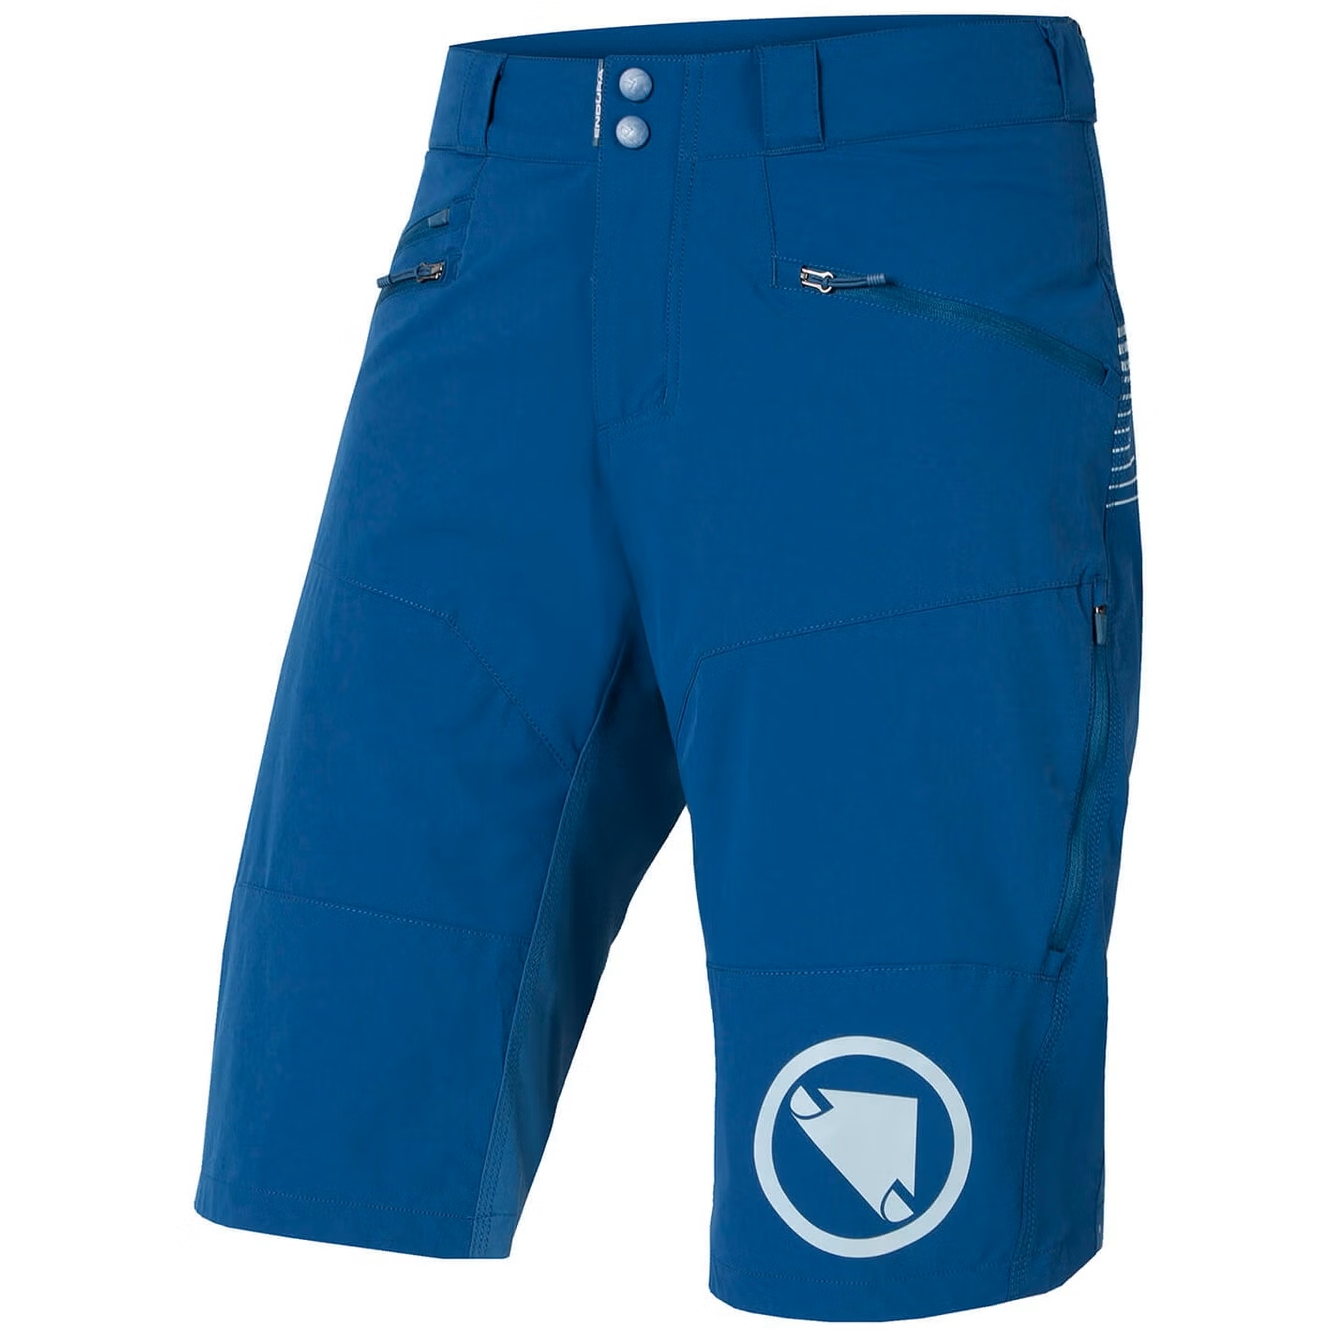 Productfoto van Endura SingleTrack II Shorts Heren - blueberry